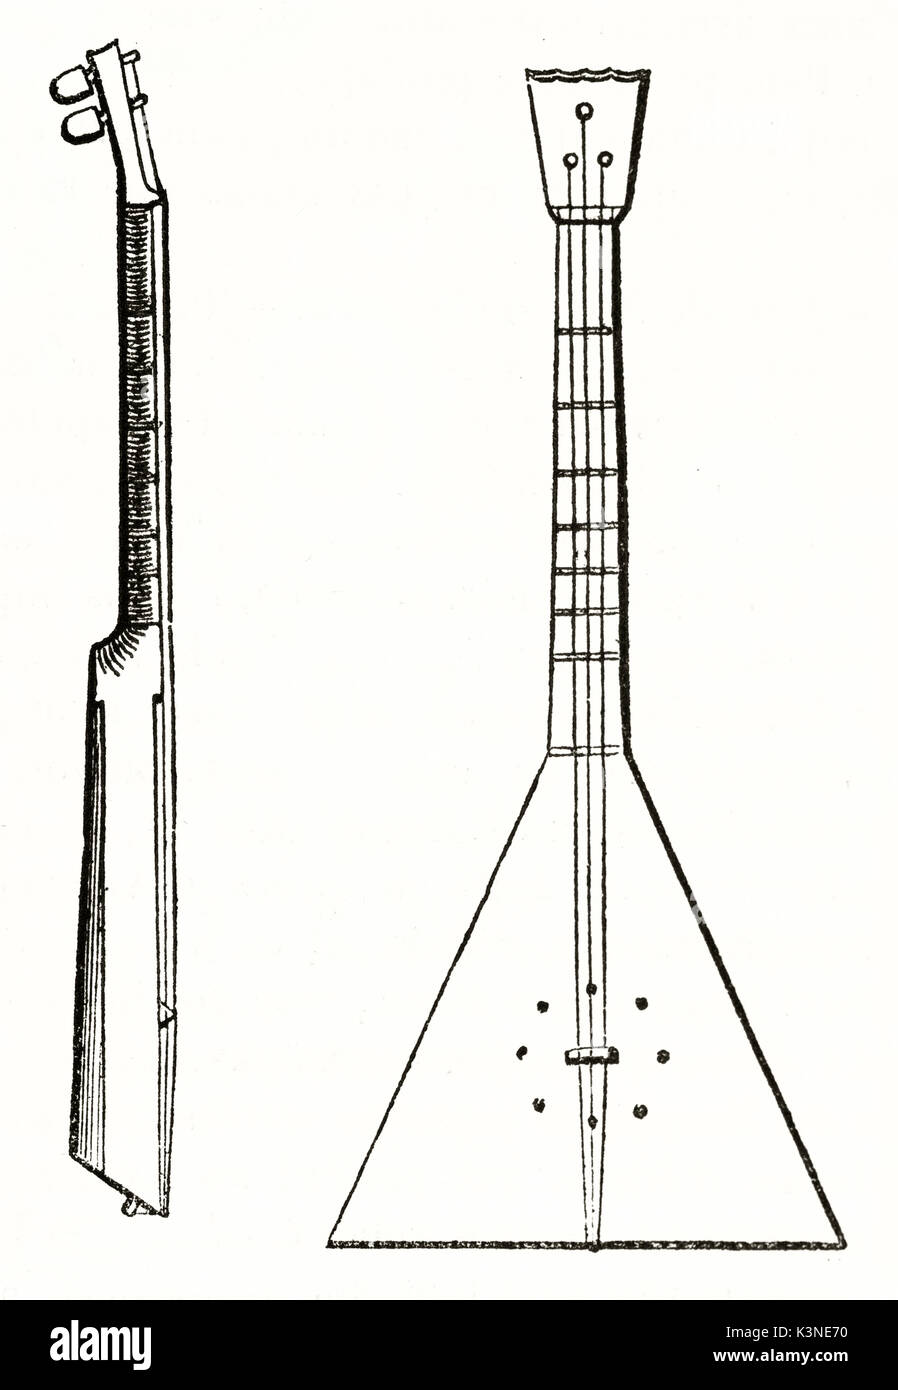 Vieille illustration d'un cosaque de la guitare avec sa forme triangulaire unique. Vues avant et latérale sur fond blanc. Auteur non identifié publié le magasin pittoresque Paris 1839 Banque D'Images